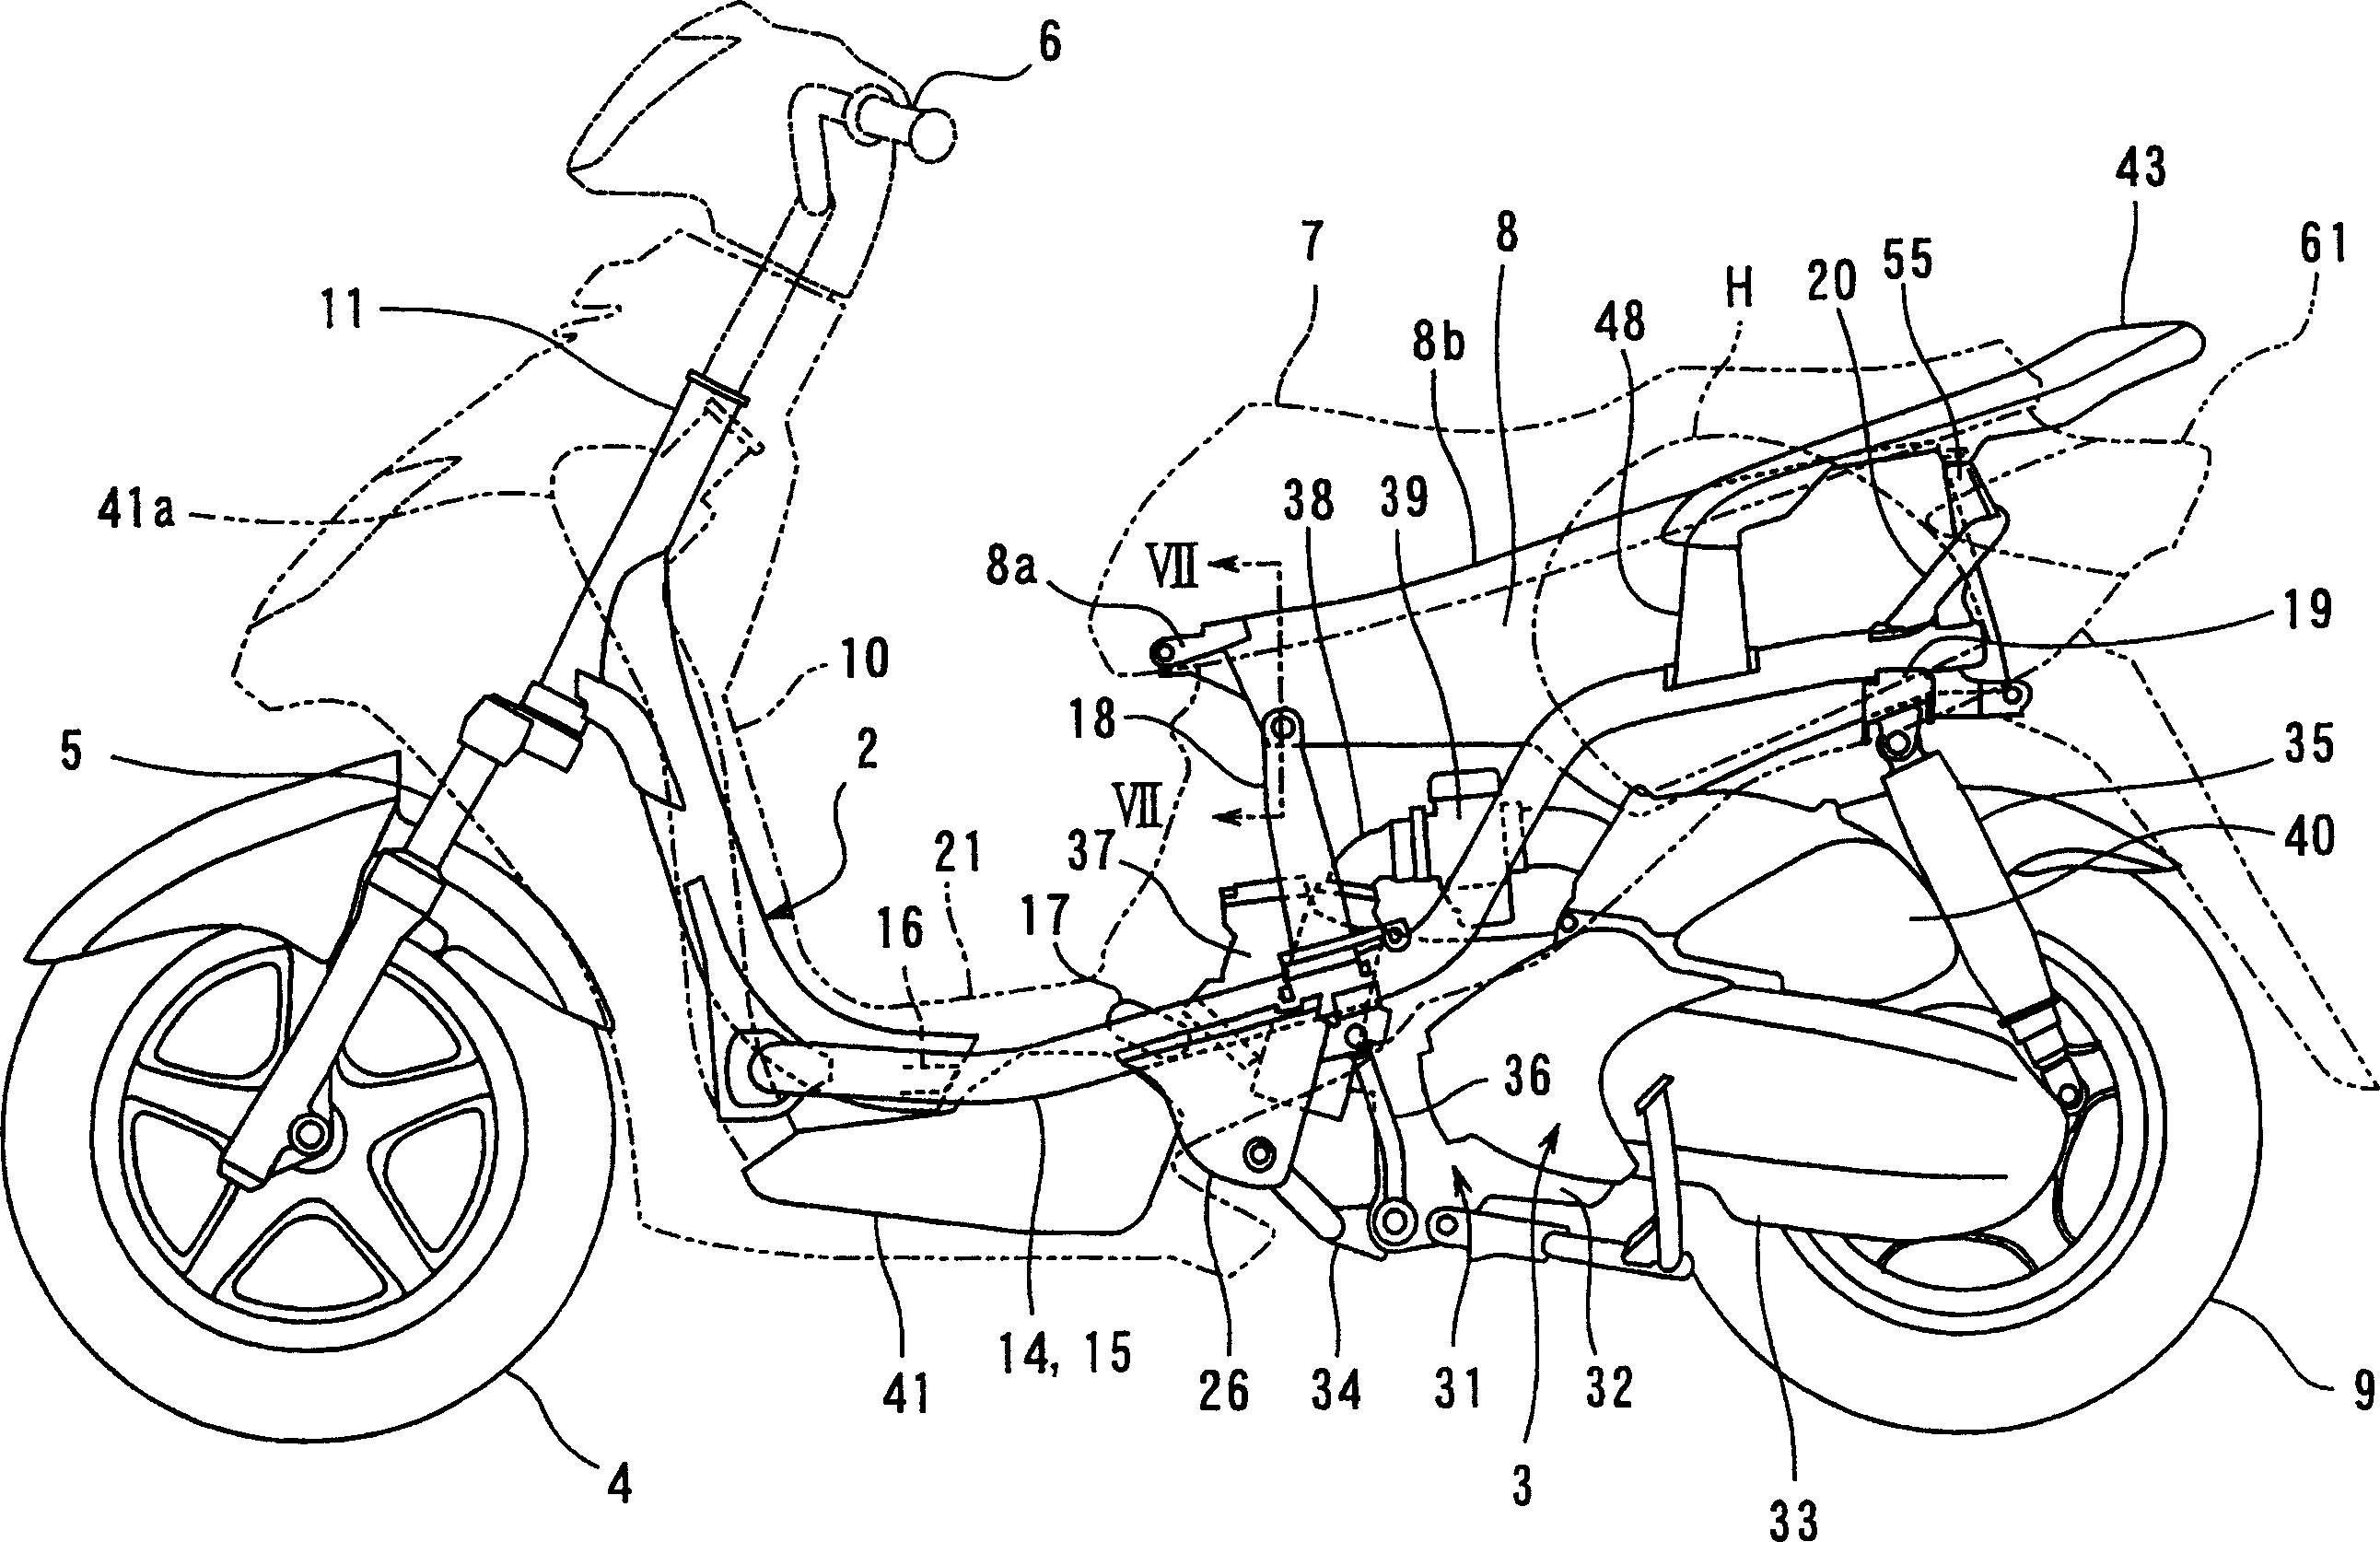 Padal-type two-wheel motorcycle